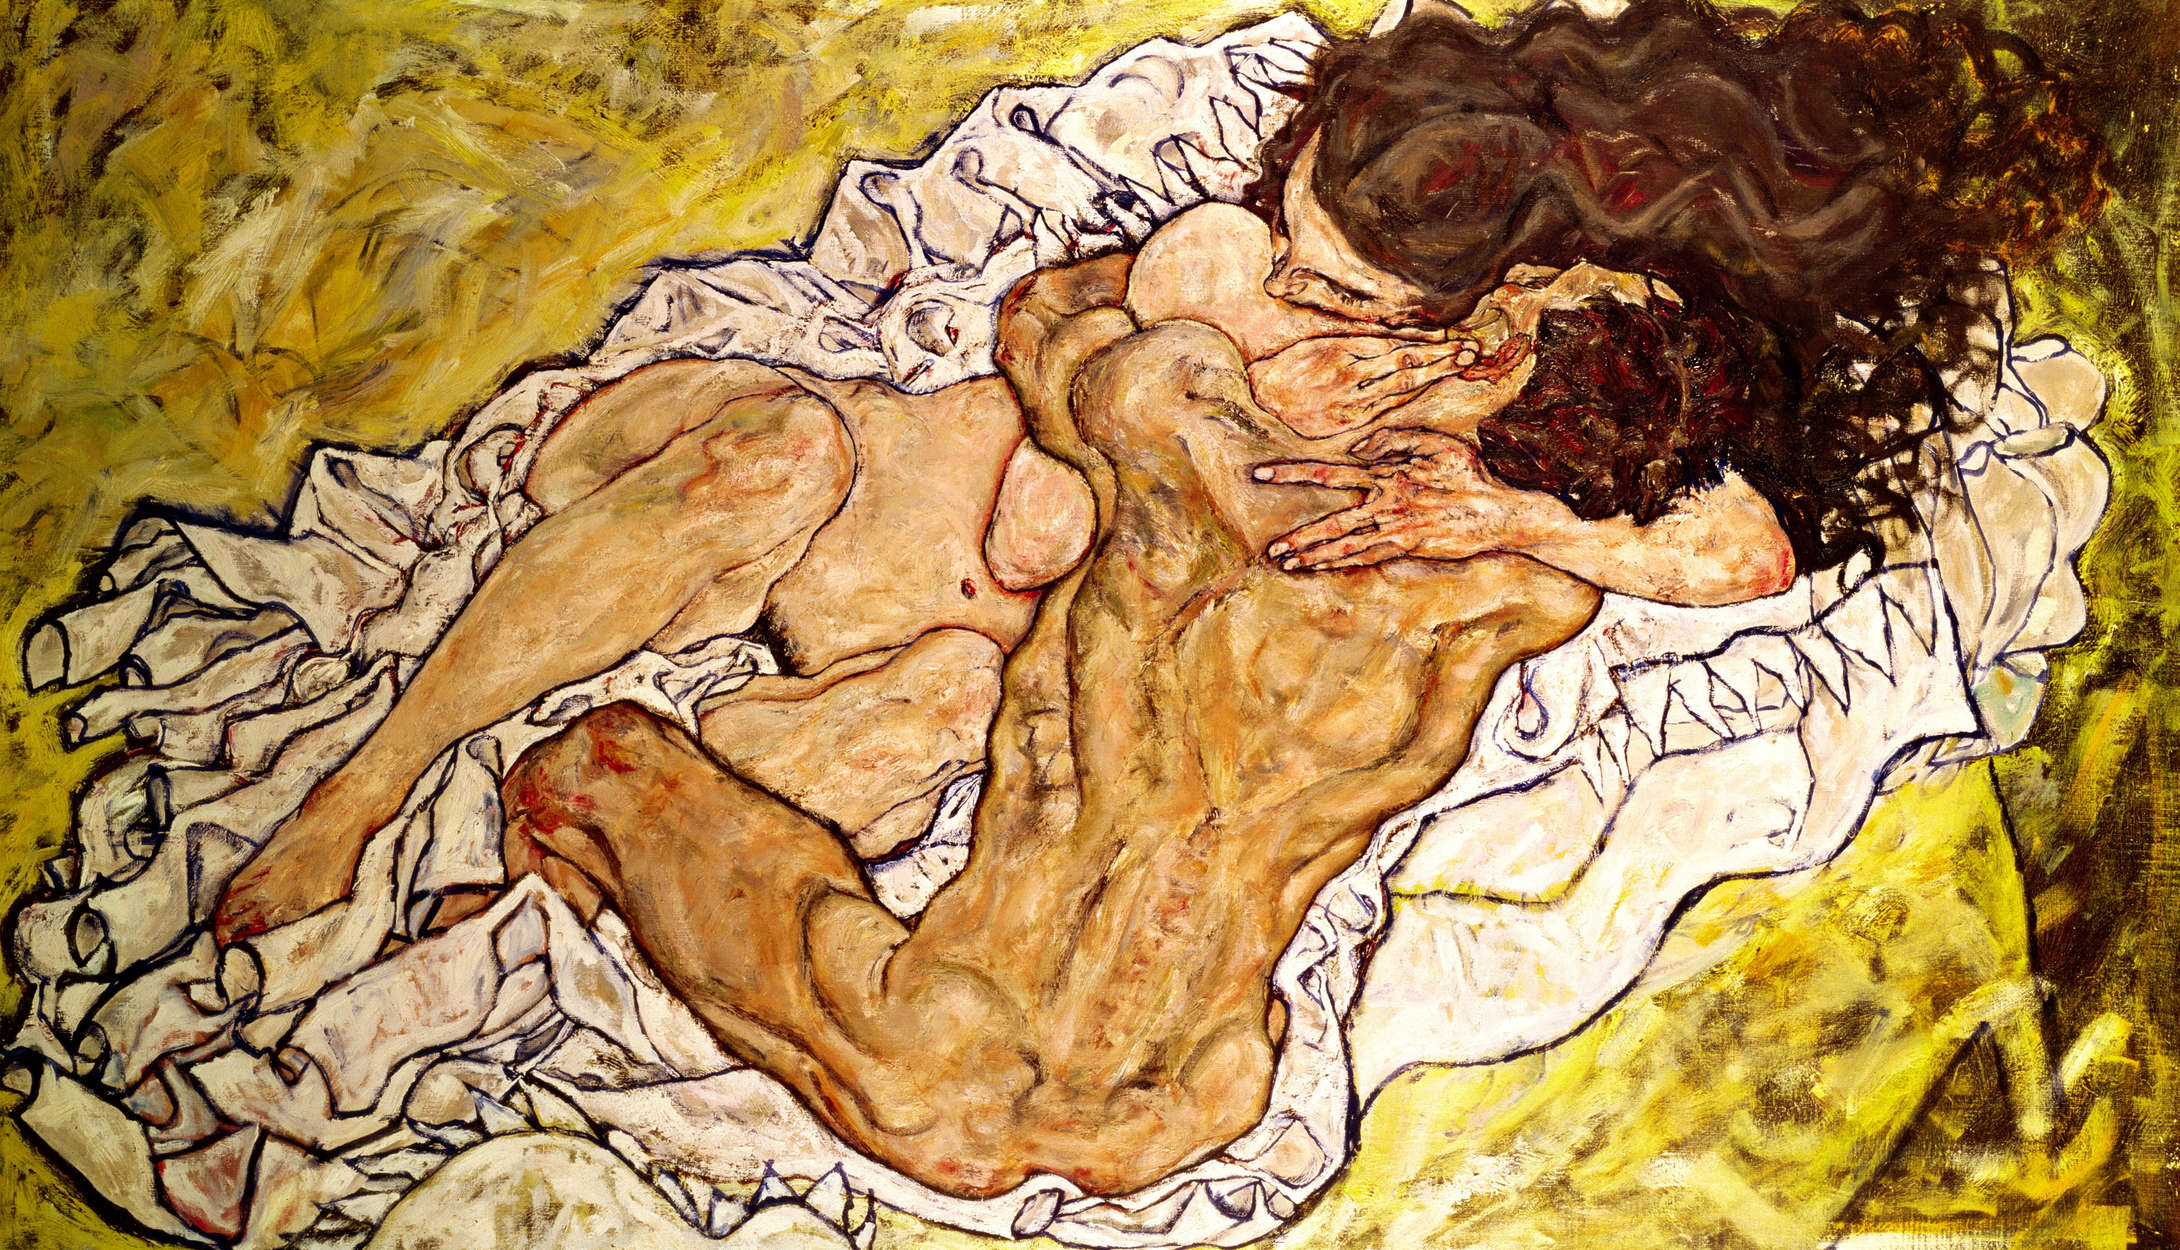             De omhelzing" muurschildering van Egon Schiele
        